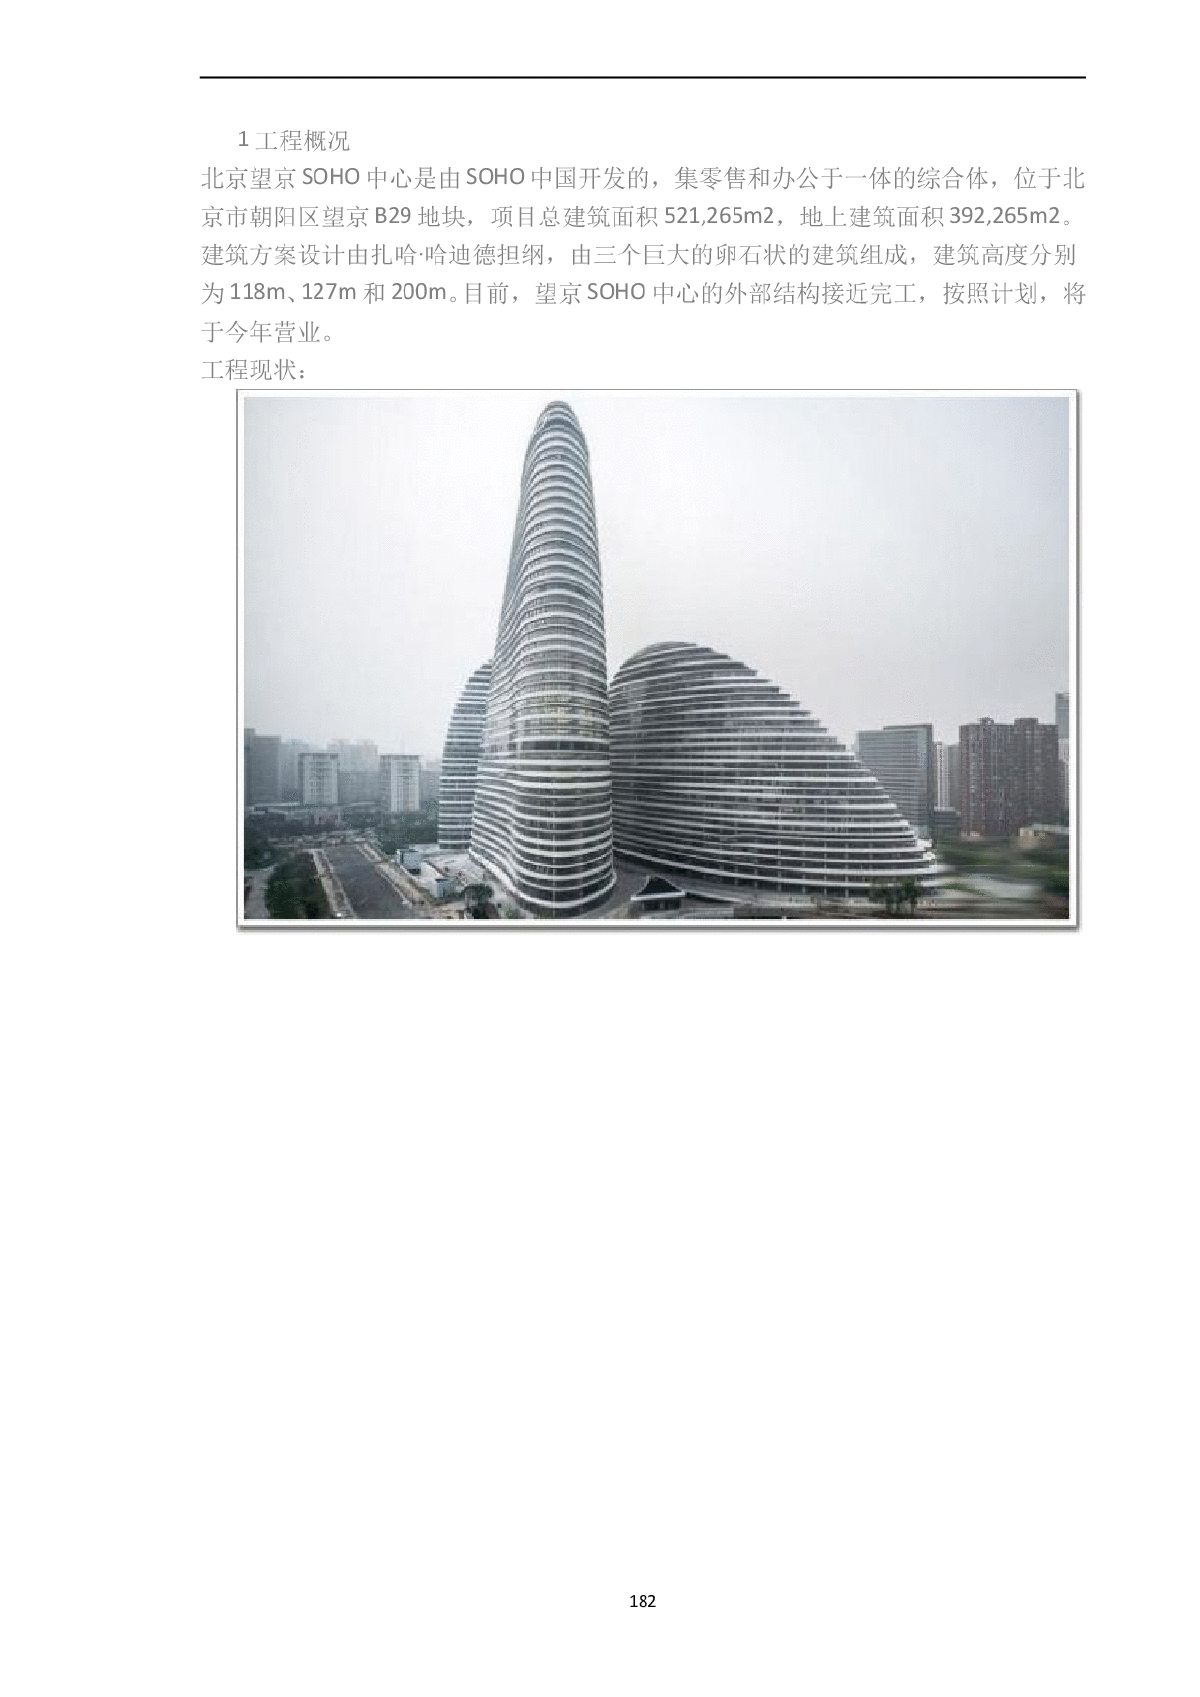 北京望京SOHO中心T3塔楼结构设计分析